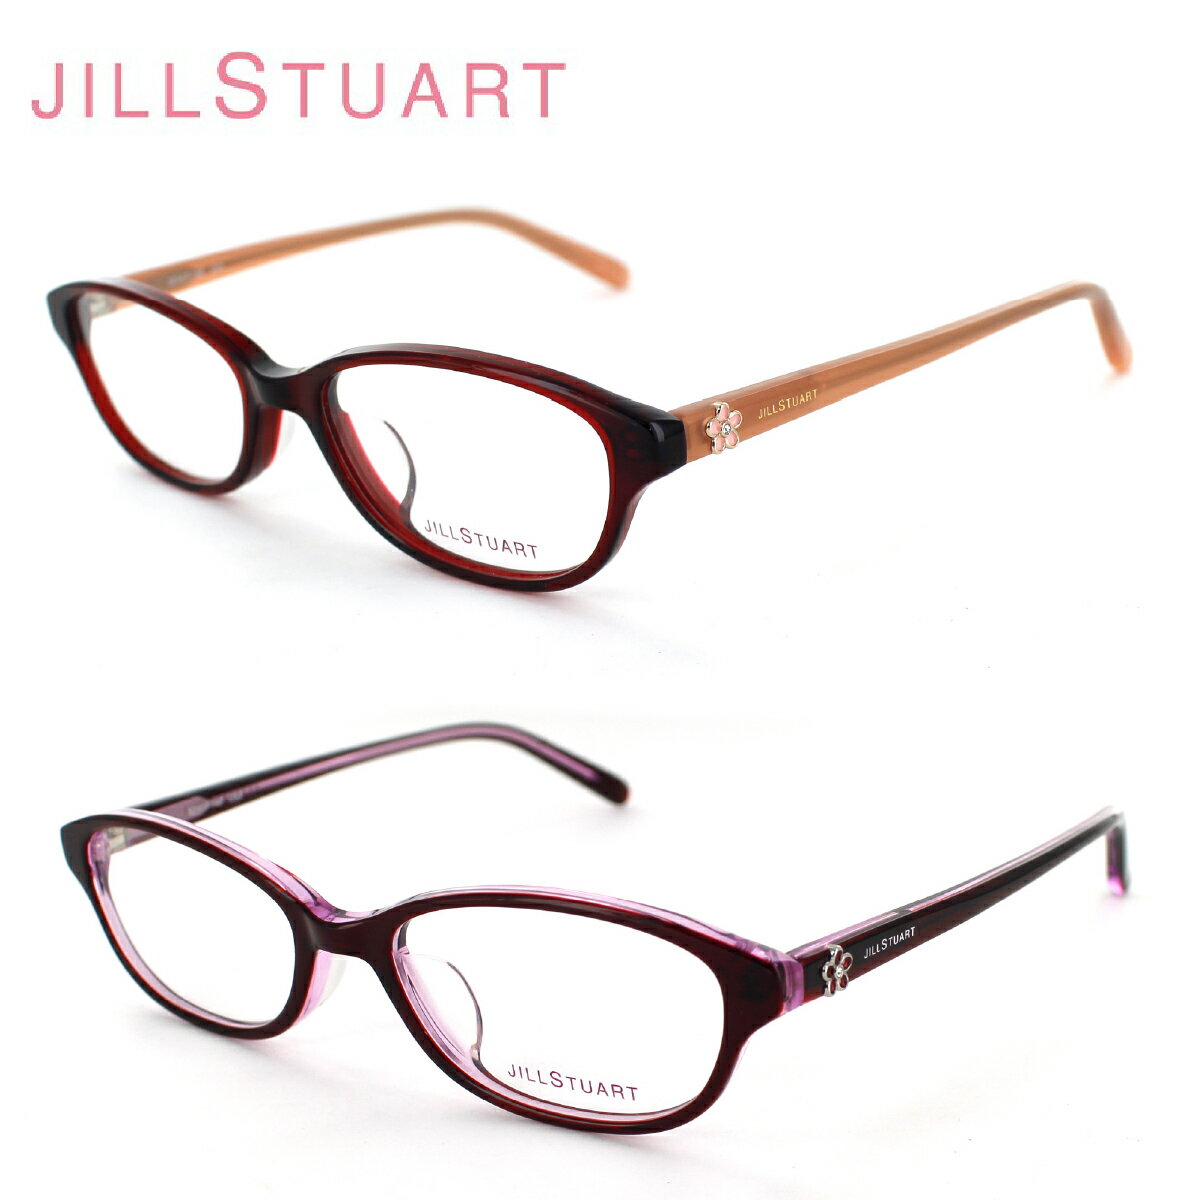 ジルスチュアート 眼鏡フレーム JILL STUART ジルスチュアート 05-0804 レディース キュート オシャレ フェミニン 大人女性眼鏡 送料無料 母の日